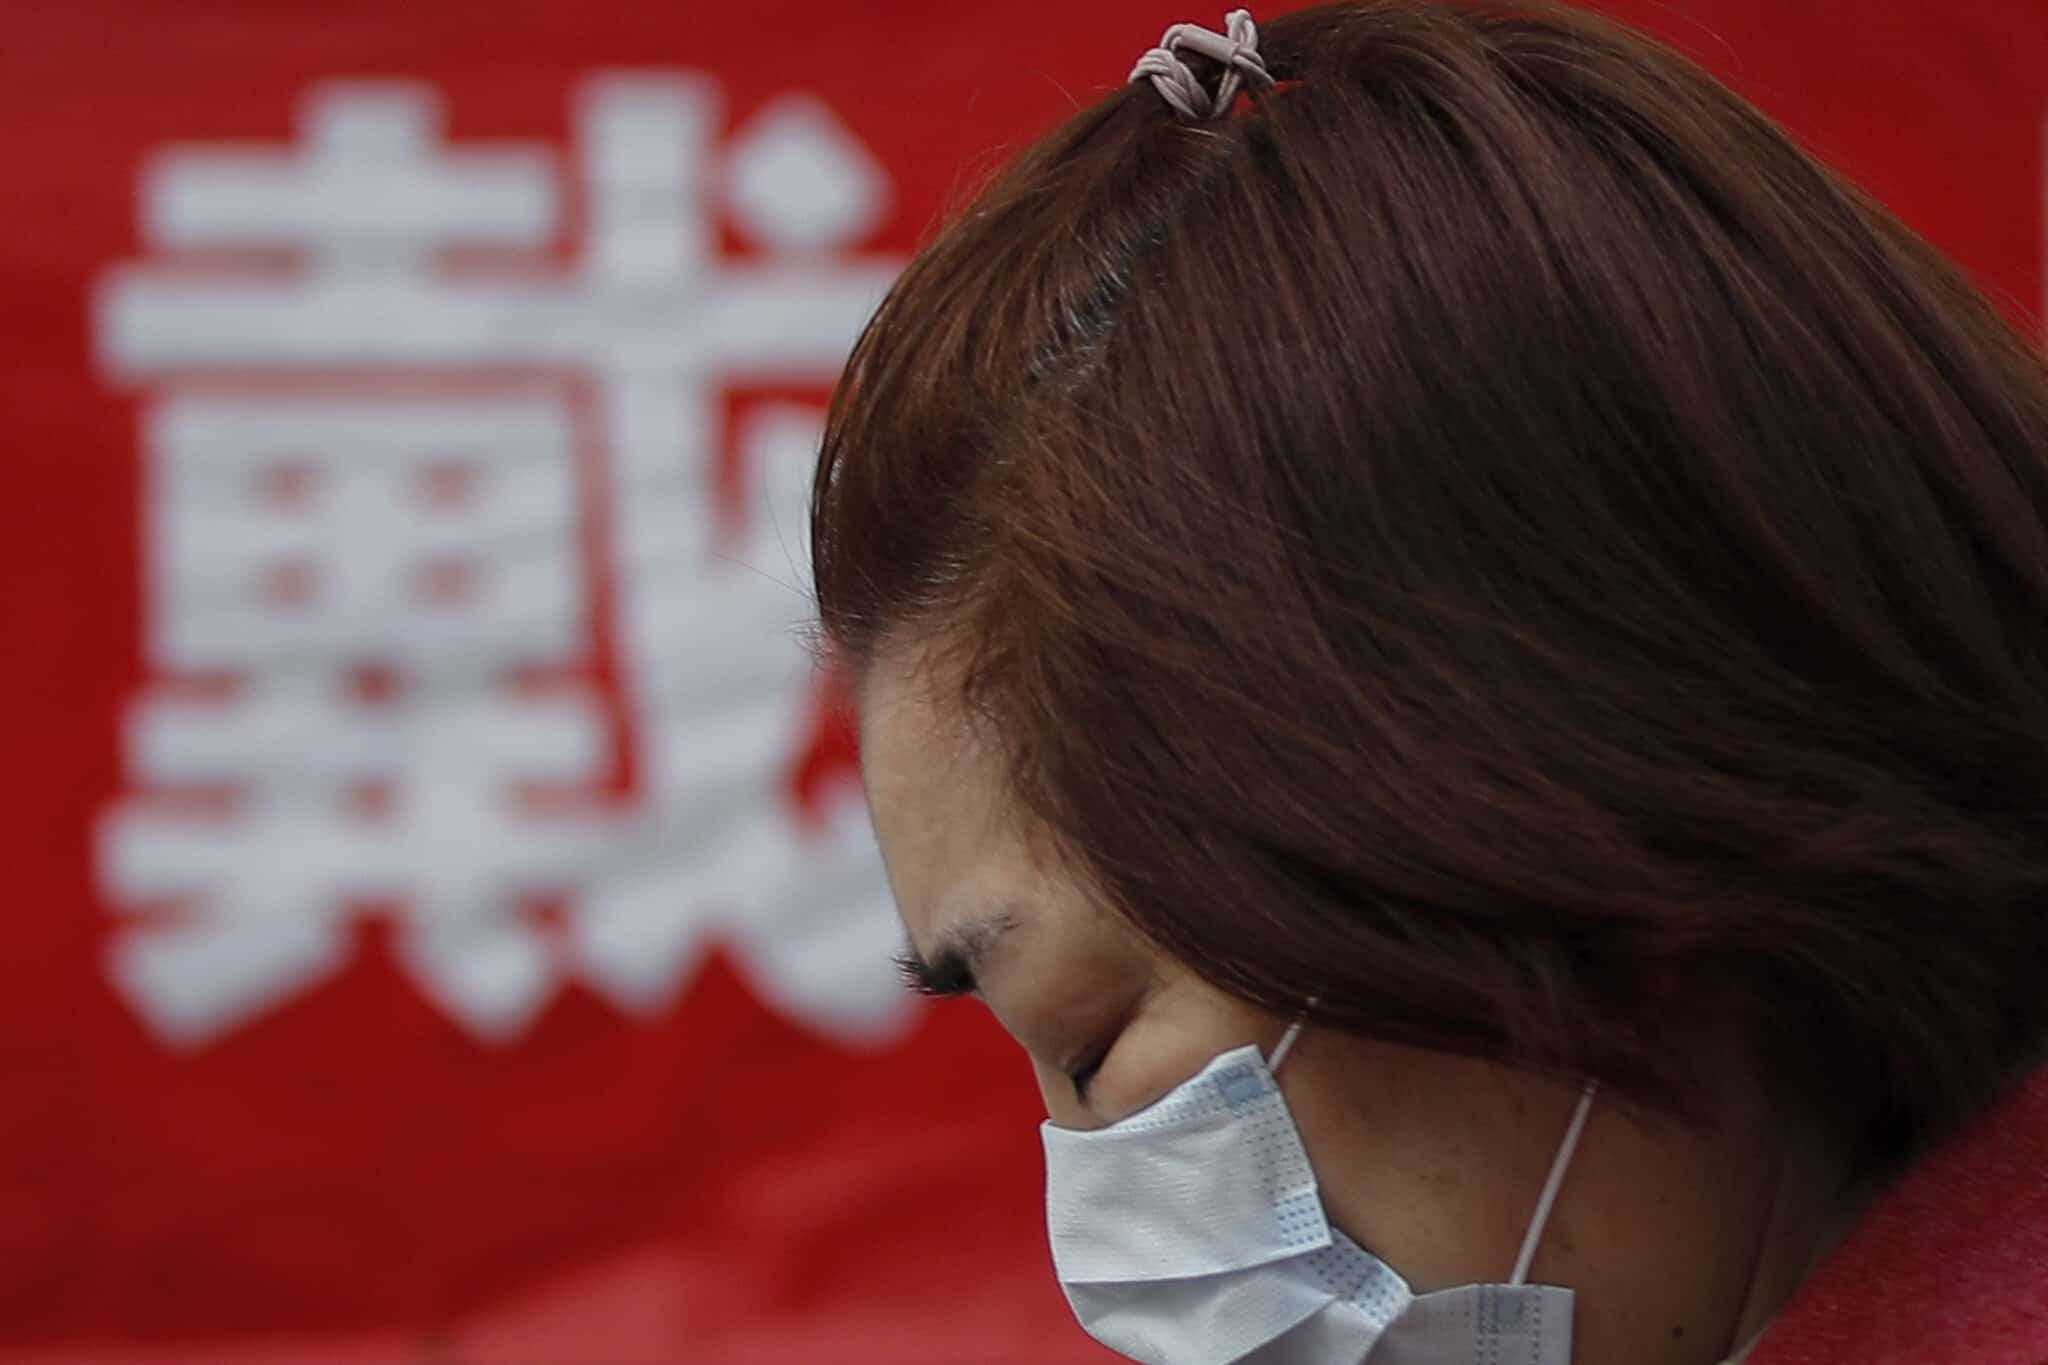 מגפת הקורונה בסין, מרץ 2020 (צילום: AP Photo/Andy Wong)